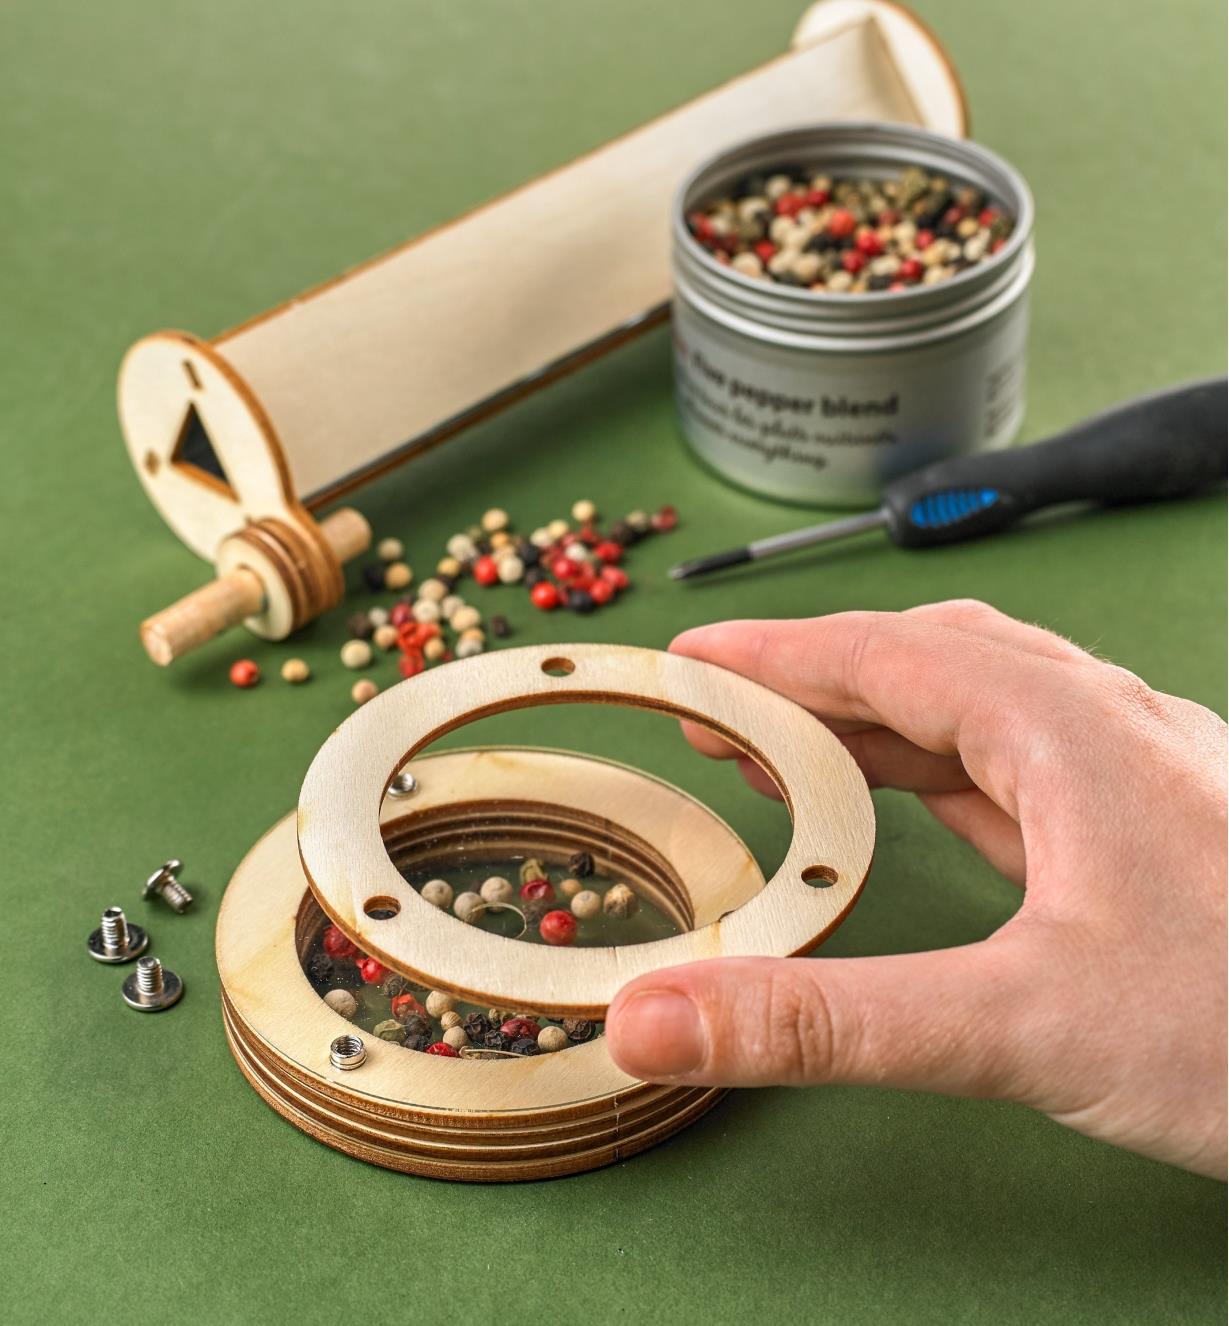 Disque rotatif du kaléidoscope rechargeable, démonté pour le remplir de grains de poivre colorés